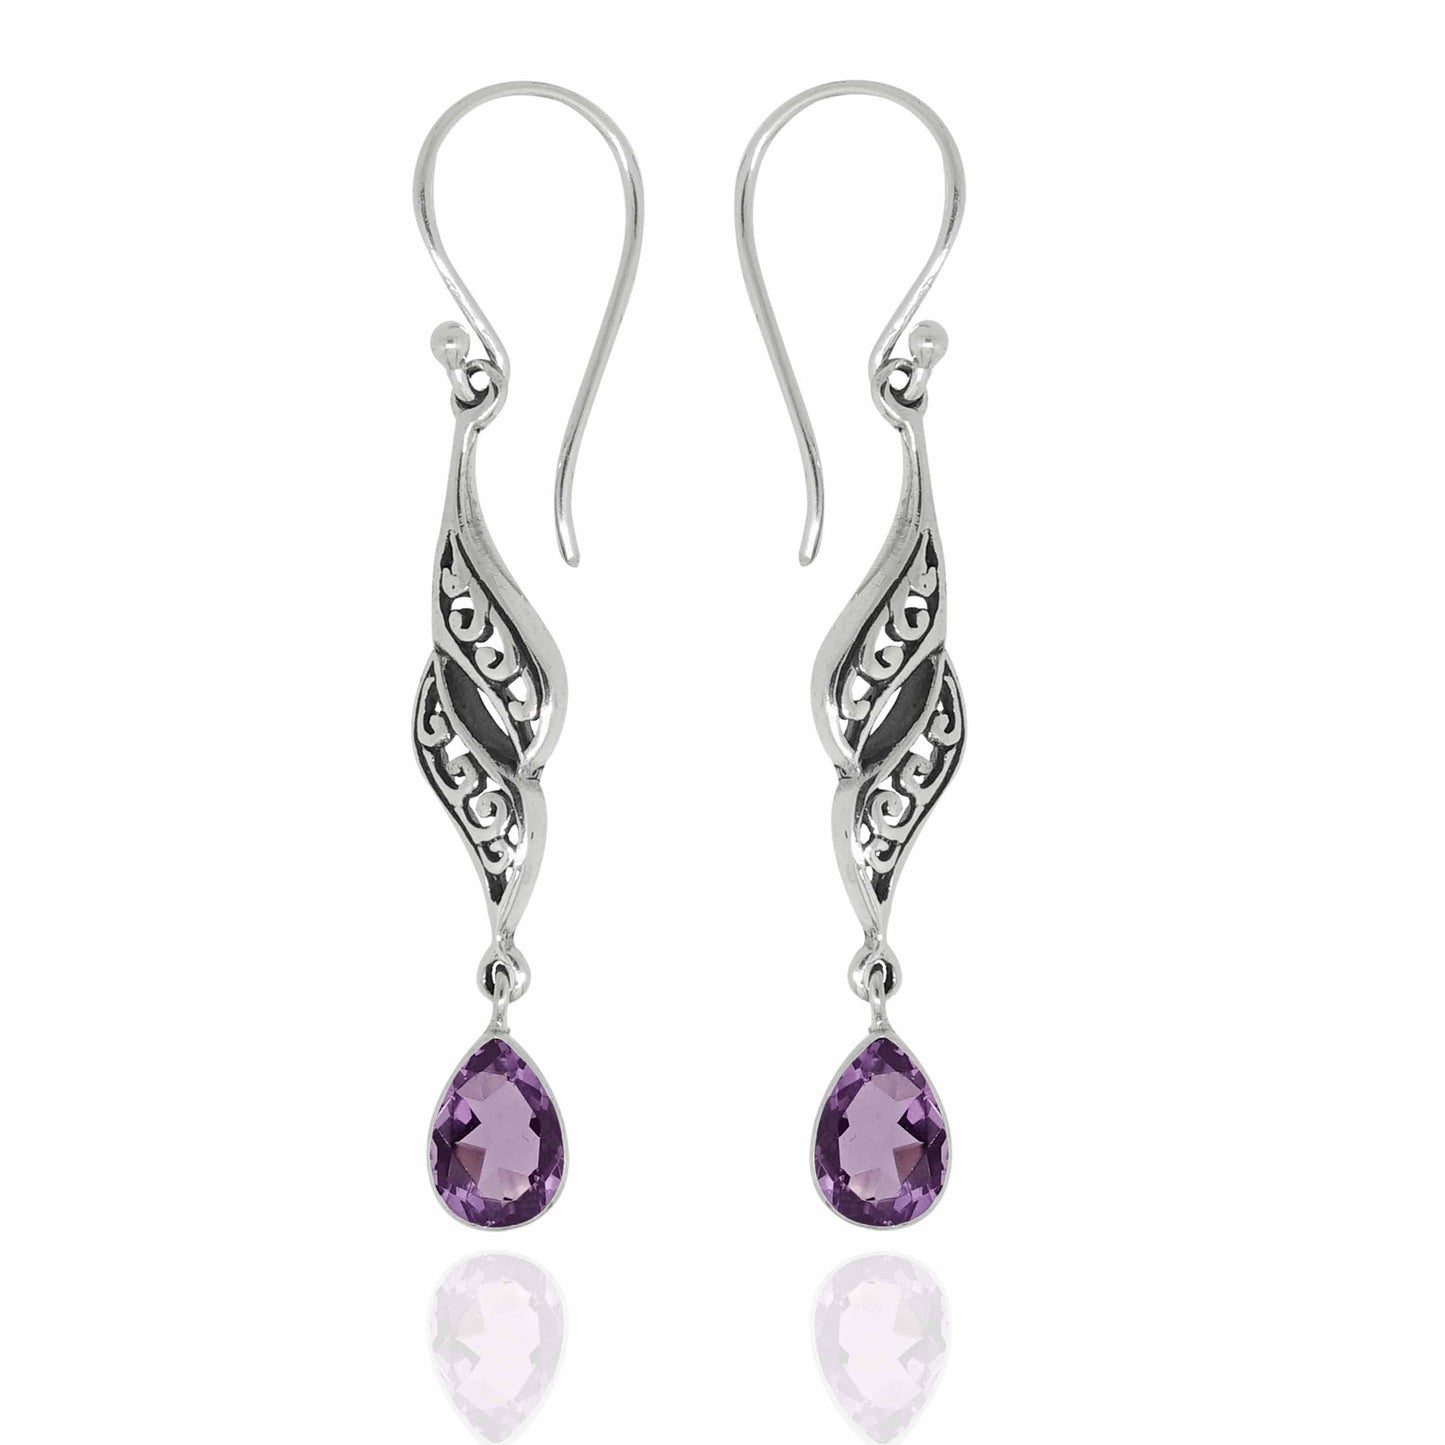 Earring Gemstones - 82321